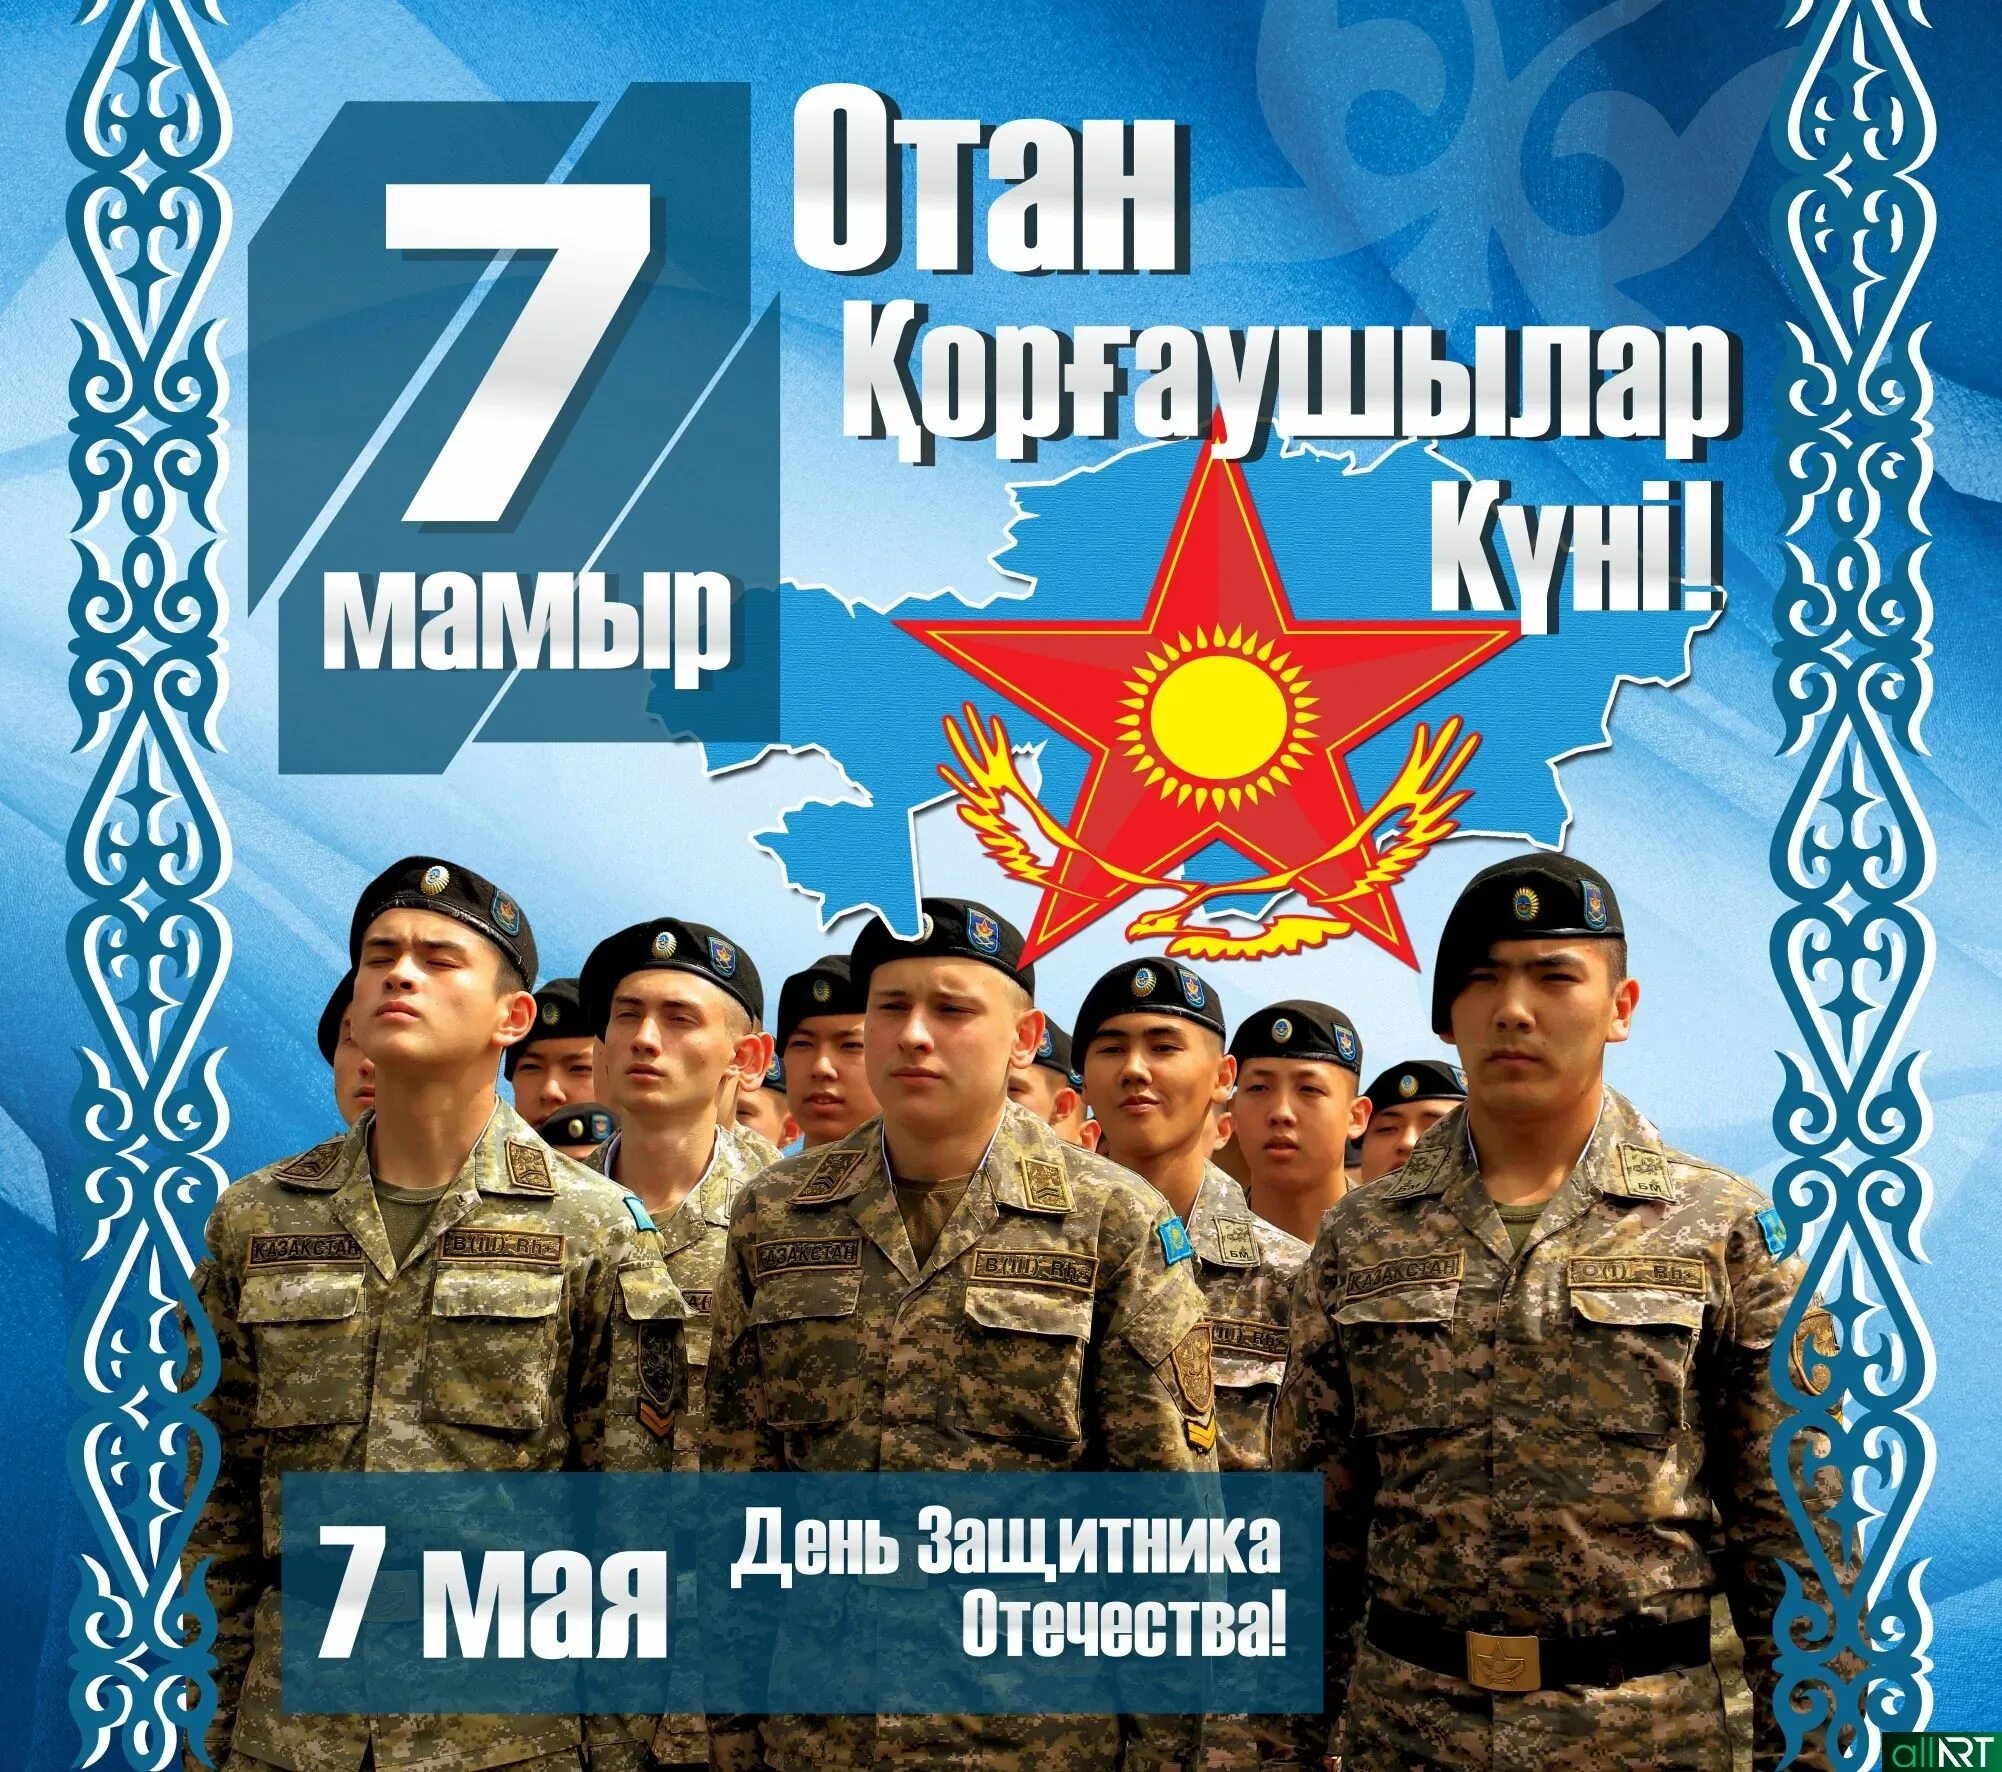 7 мая день защитника. День защитника Отечества Казахстан. 7 Мая праздник. 7 Мая день защитника Отечества. 7 Мая день защитника Отечества в Казахстане.